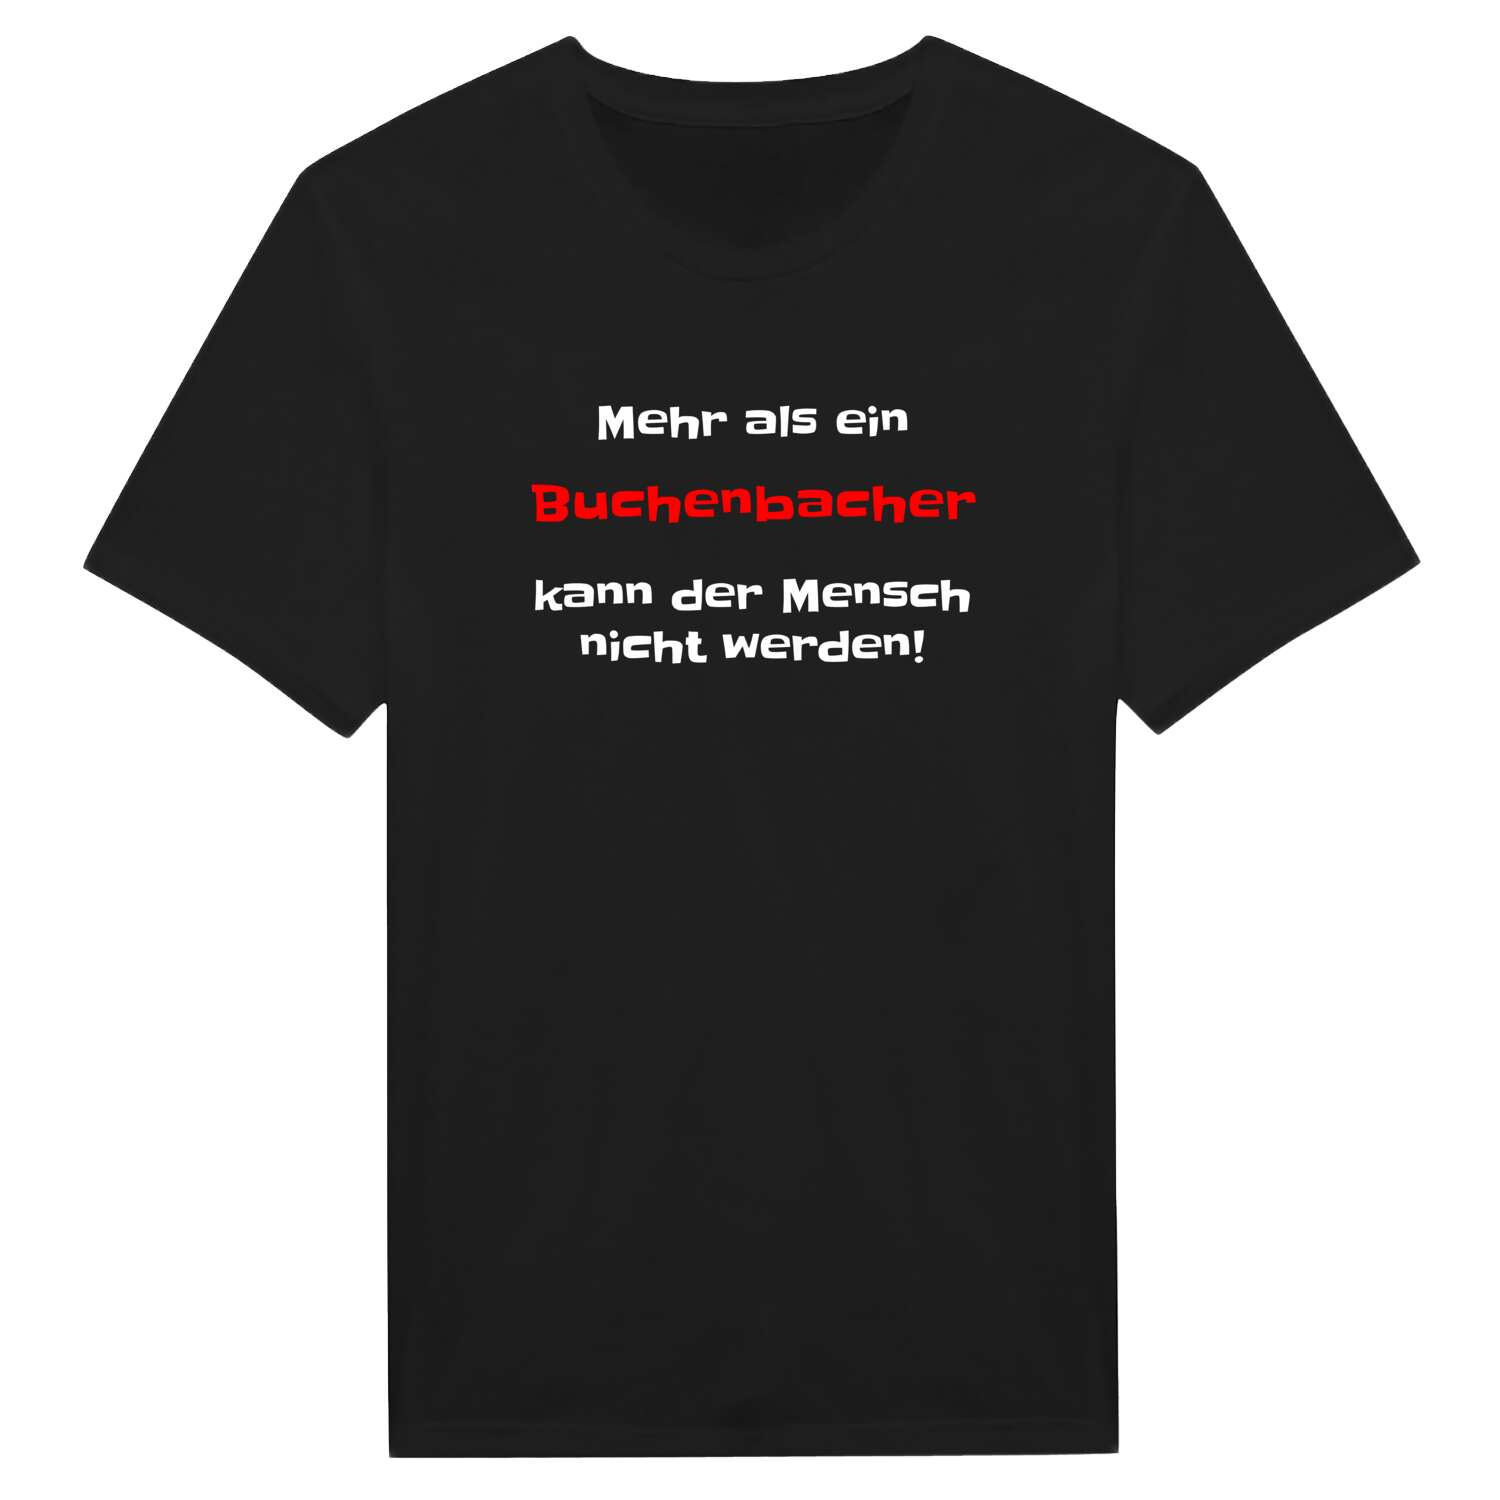 Buchenbach T-Shirt »Mehr als ein«